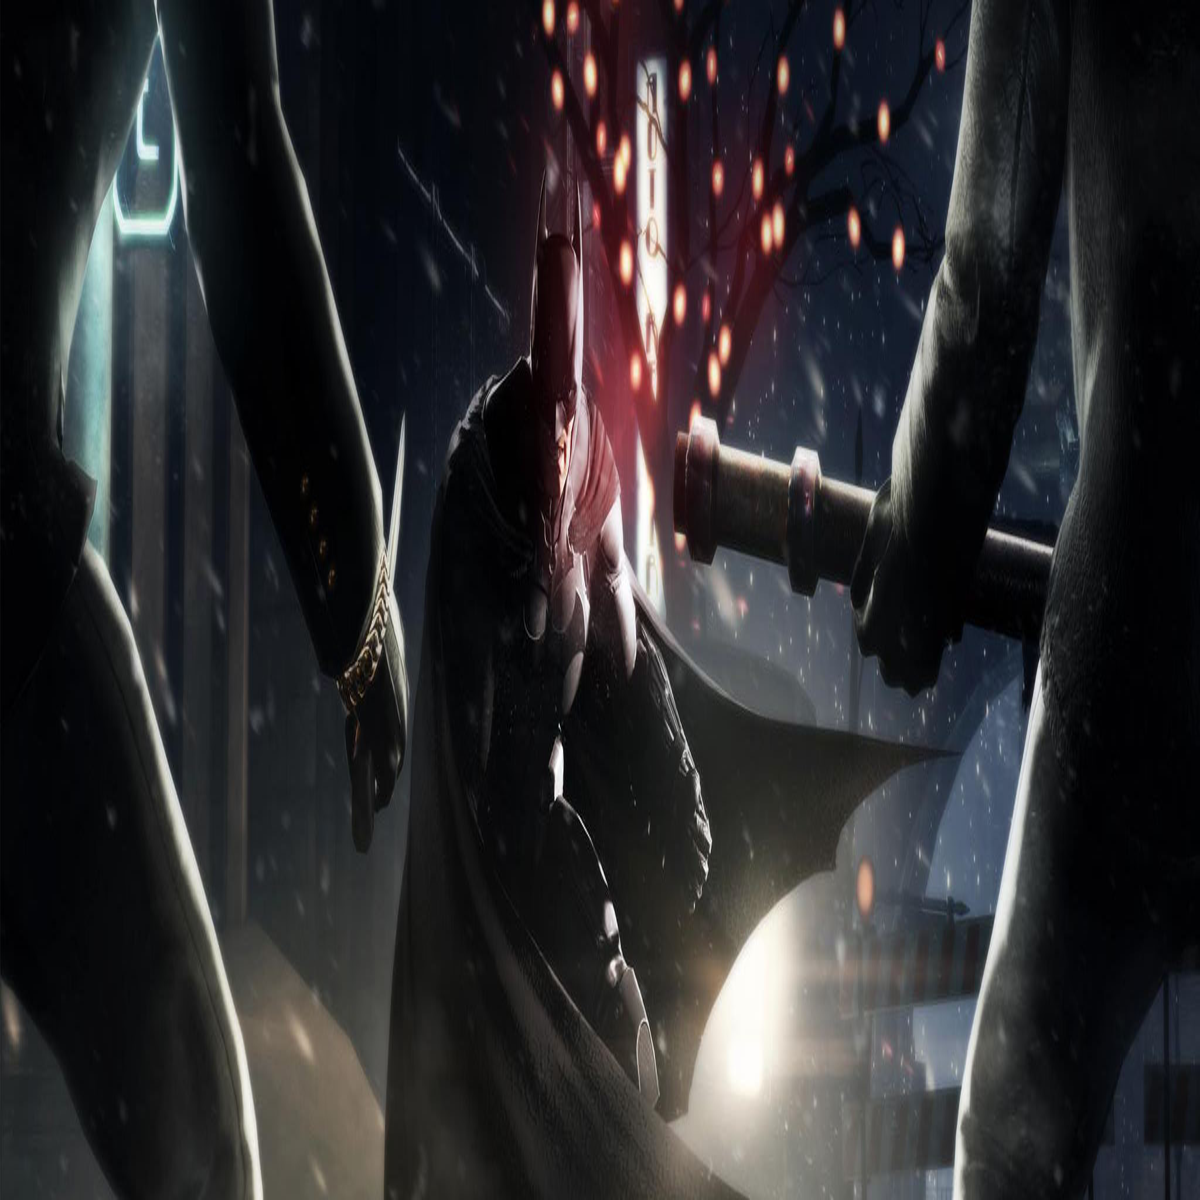 Batman: Arkham Origins - Metacritic